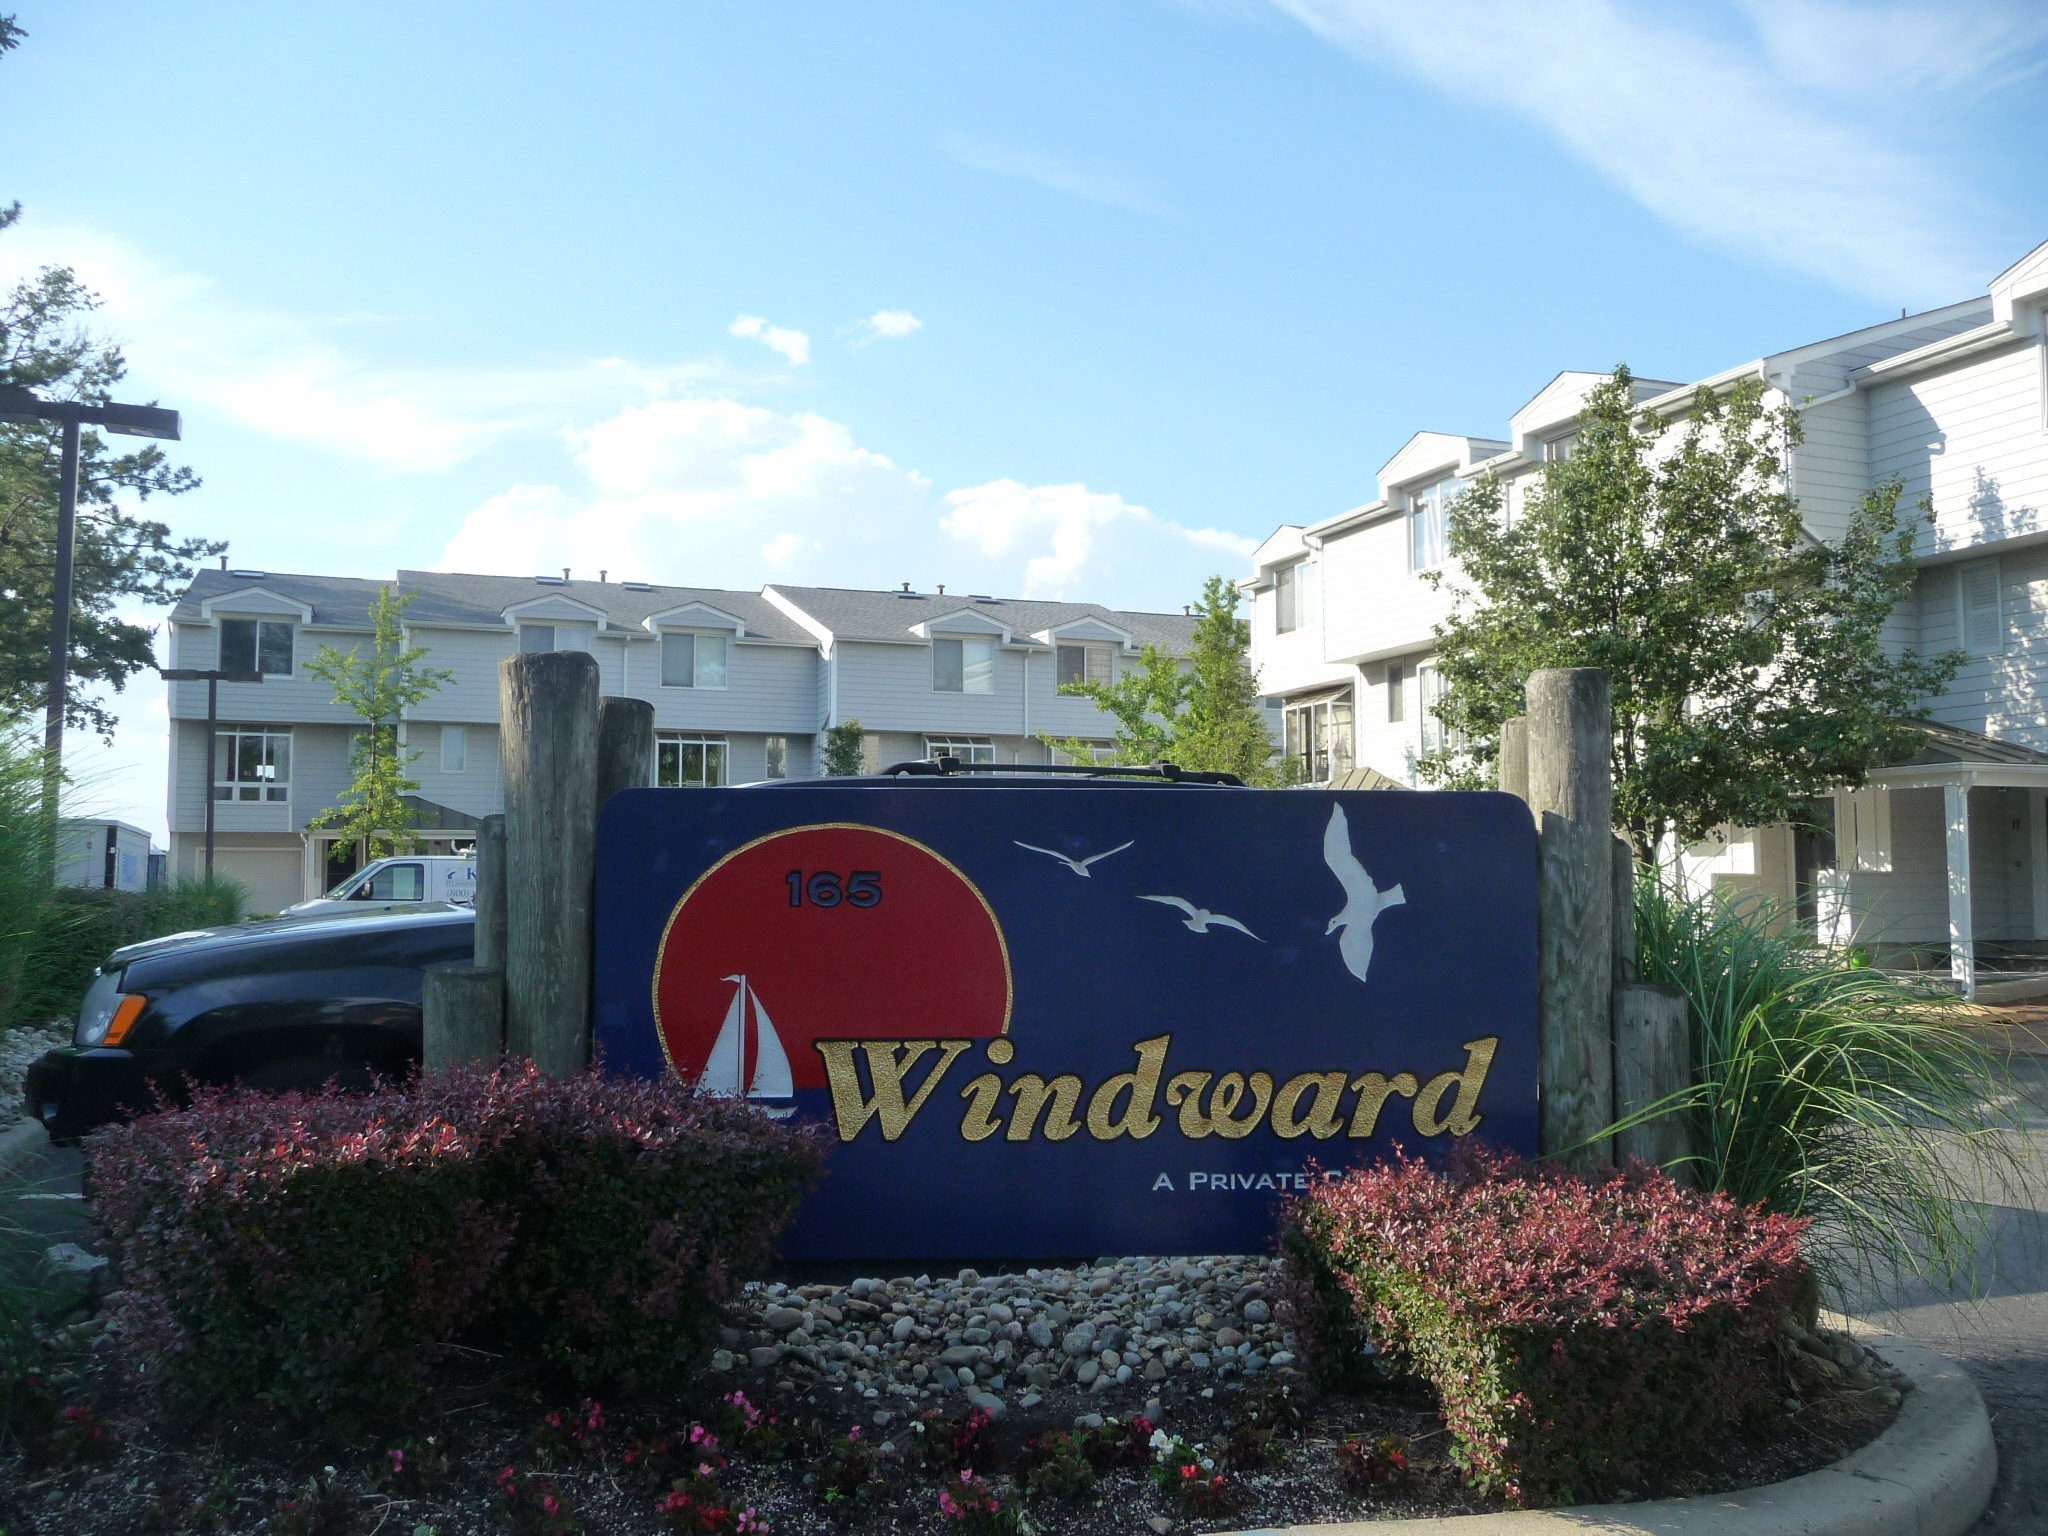 Windward Condominium, Long Branch NJ